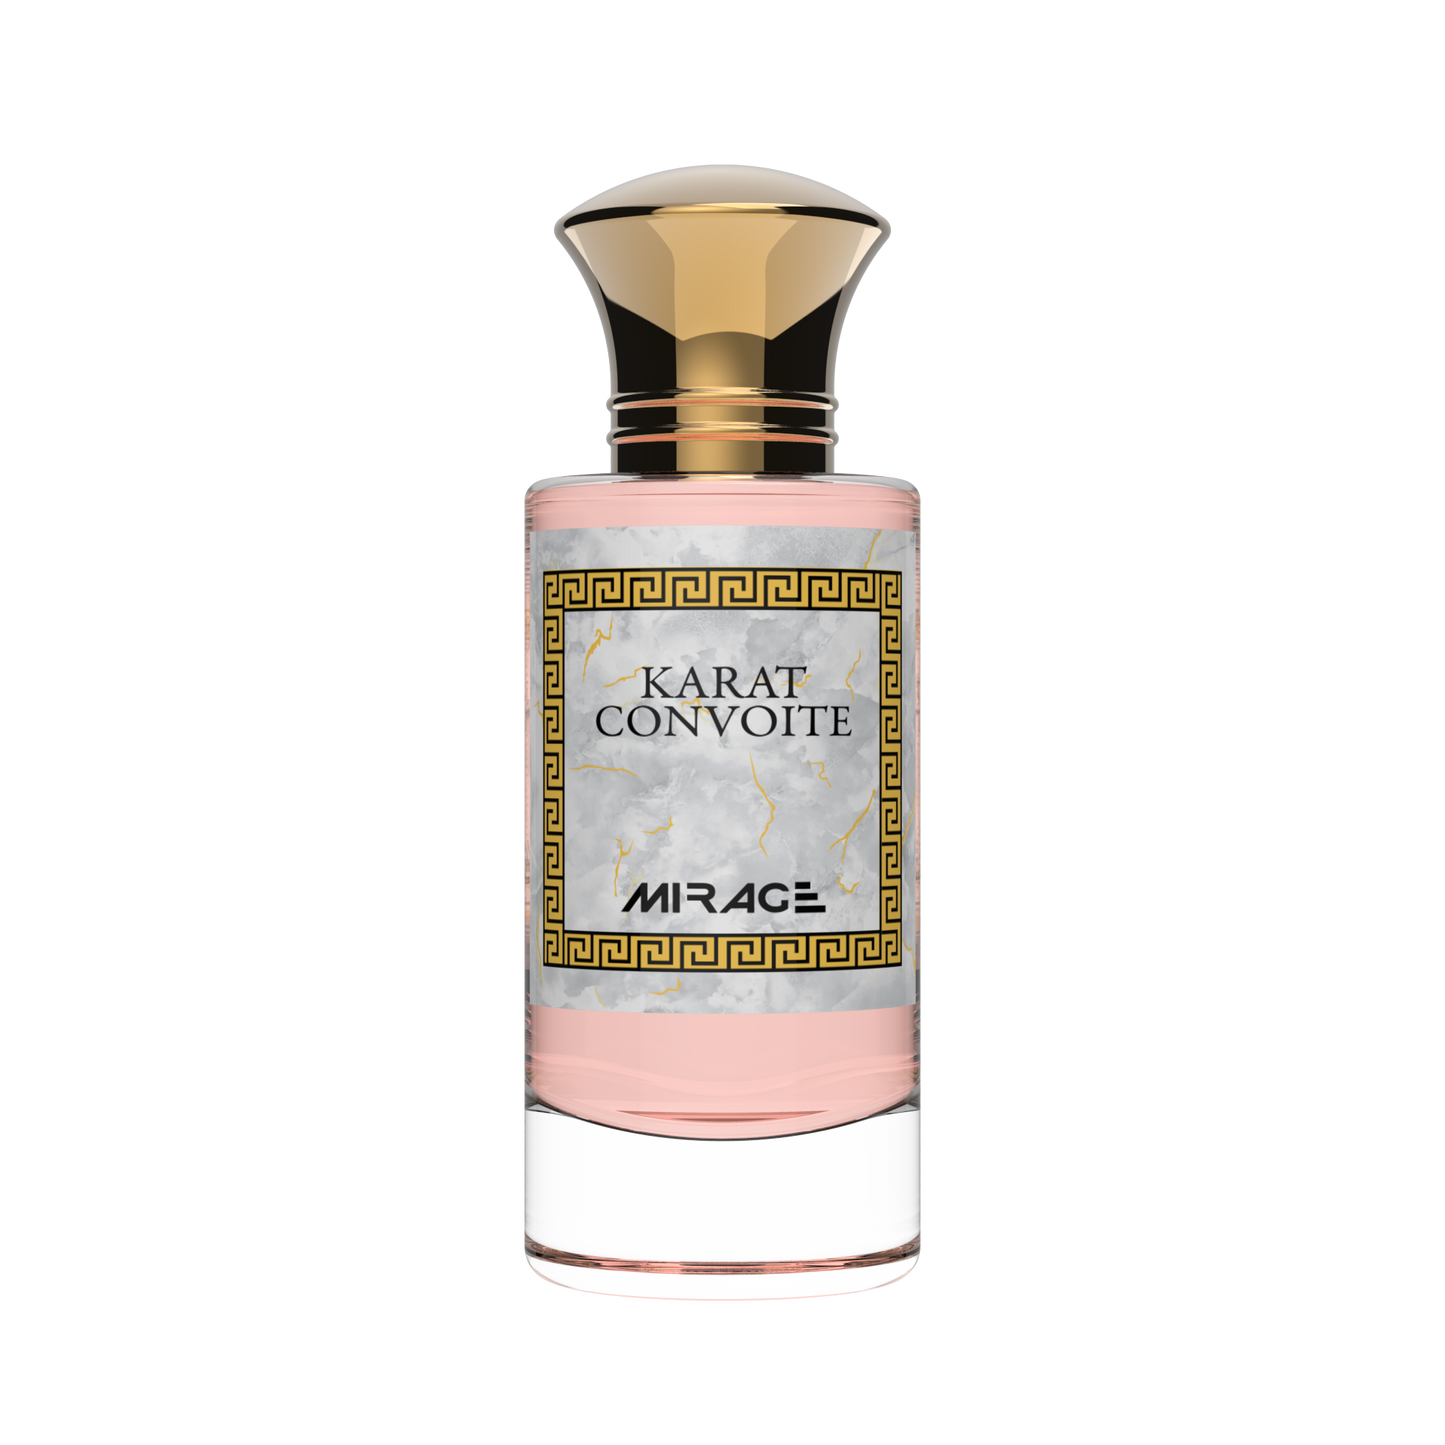 Parfect - Parfumerie Mirage - Parfums orientaux - Parfum Karat Convoité - baccarat - parfum boisé et gourmand